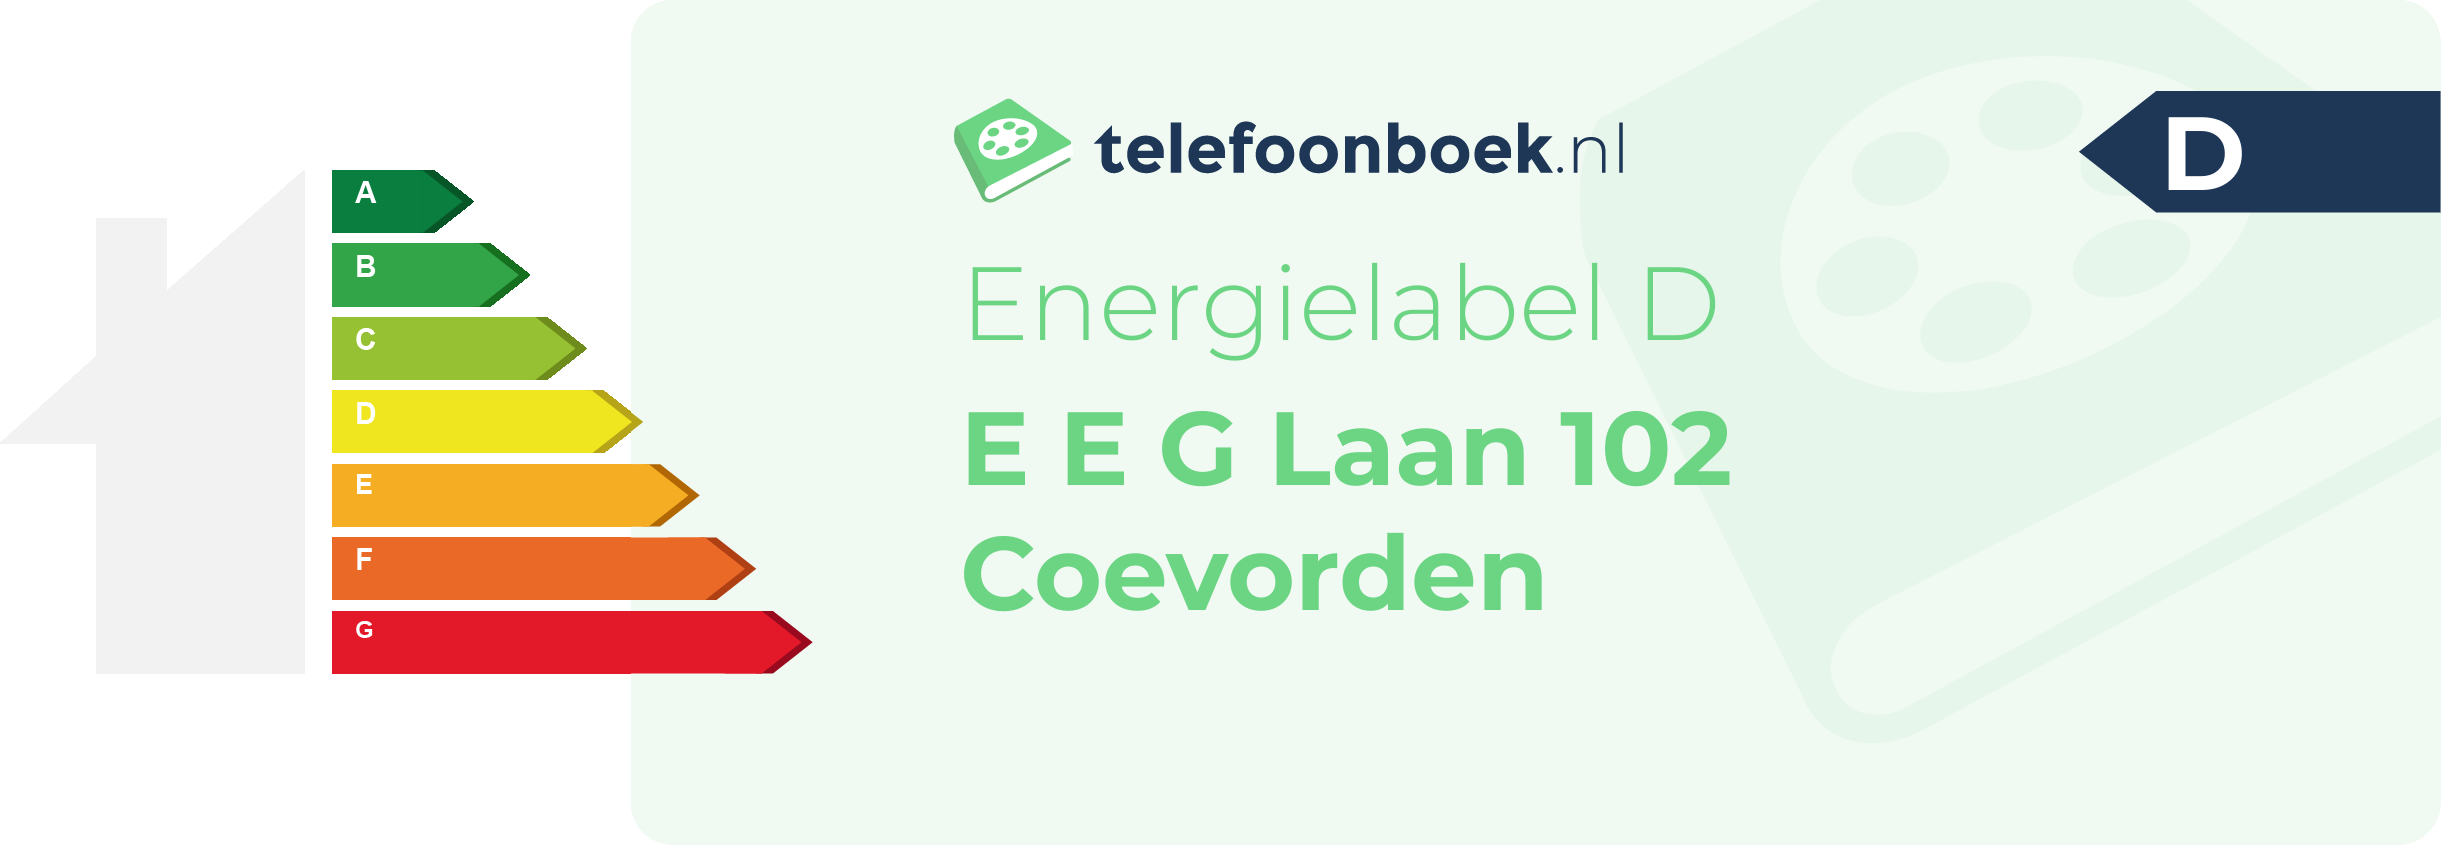 Energielabel E E G Laan 102 Coevorden